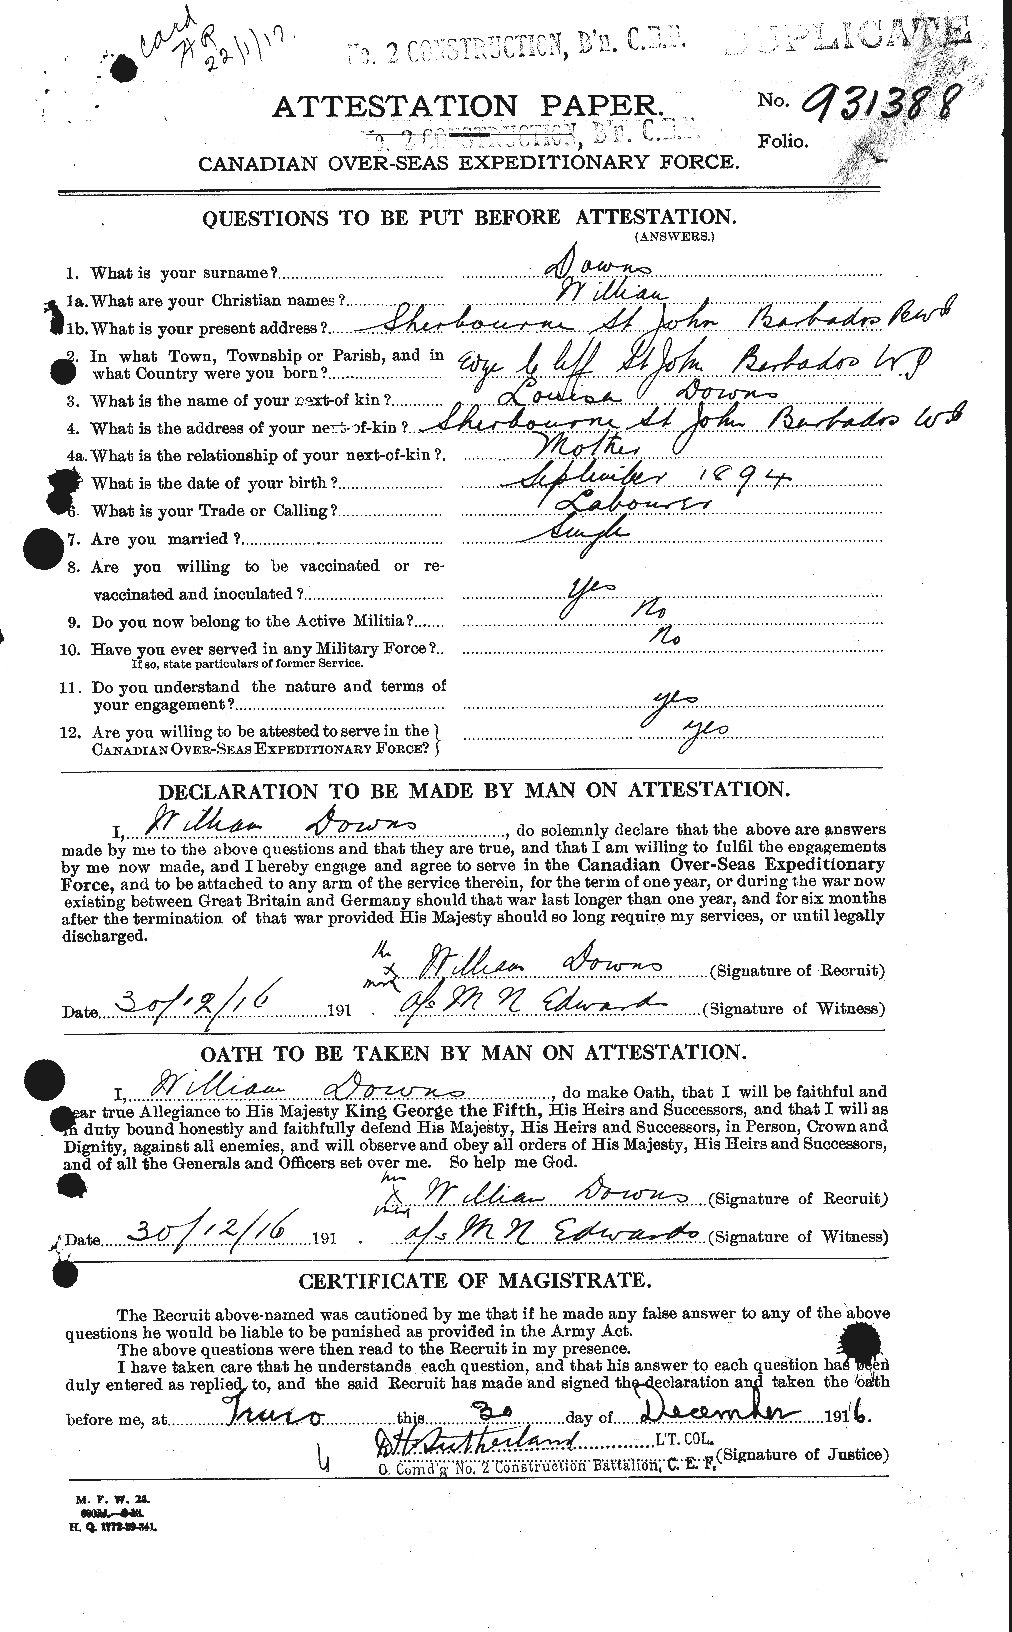 Dossiers du Personnel de la Première Guerre mondiale - CEC 297331a